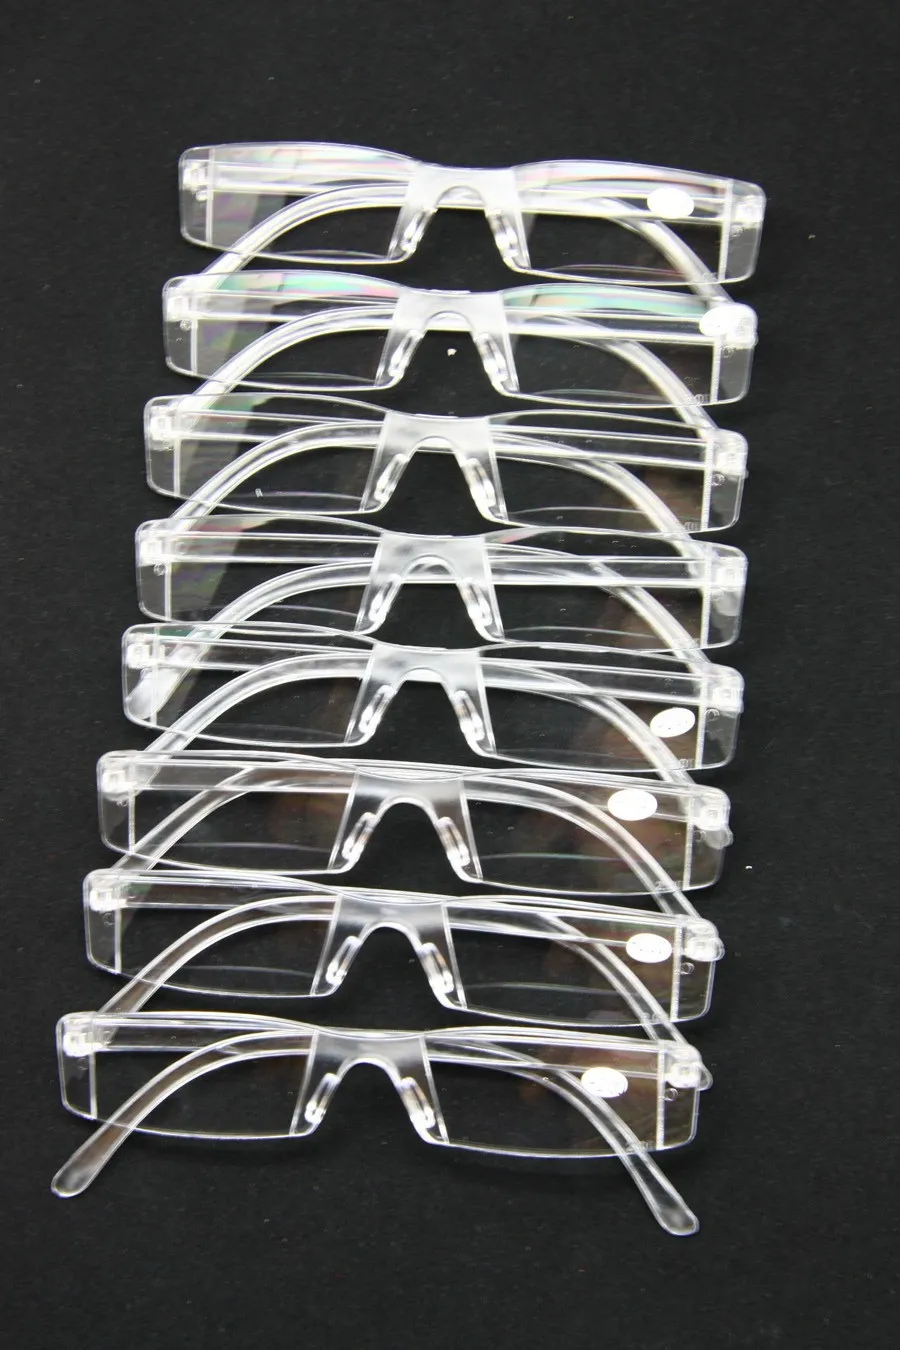 Неразрушимые мужчины Женщины для чтения очков, прозрачный пластиковый пресбыопия Presbyopia Pocket Pocket, + RX Оптечные очки для стареющих людей, старший